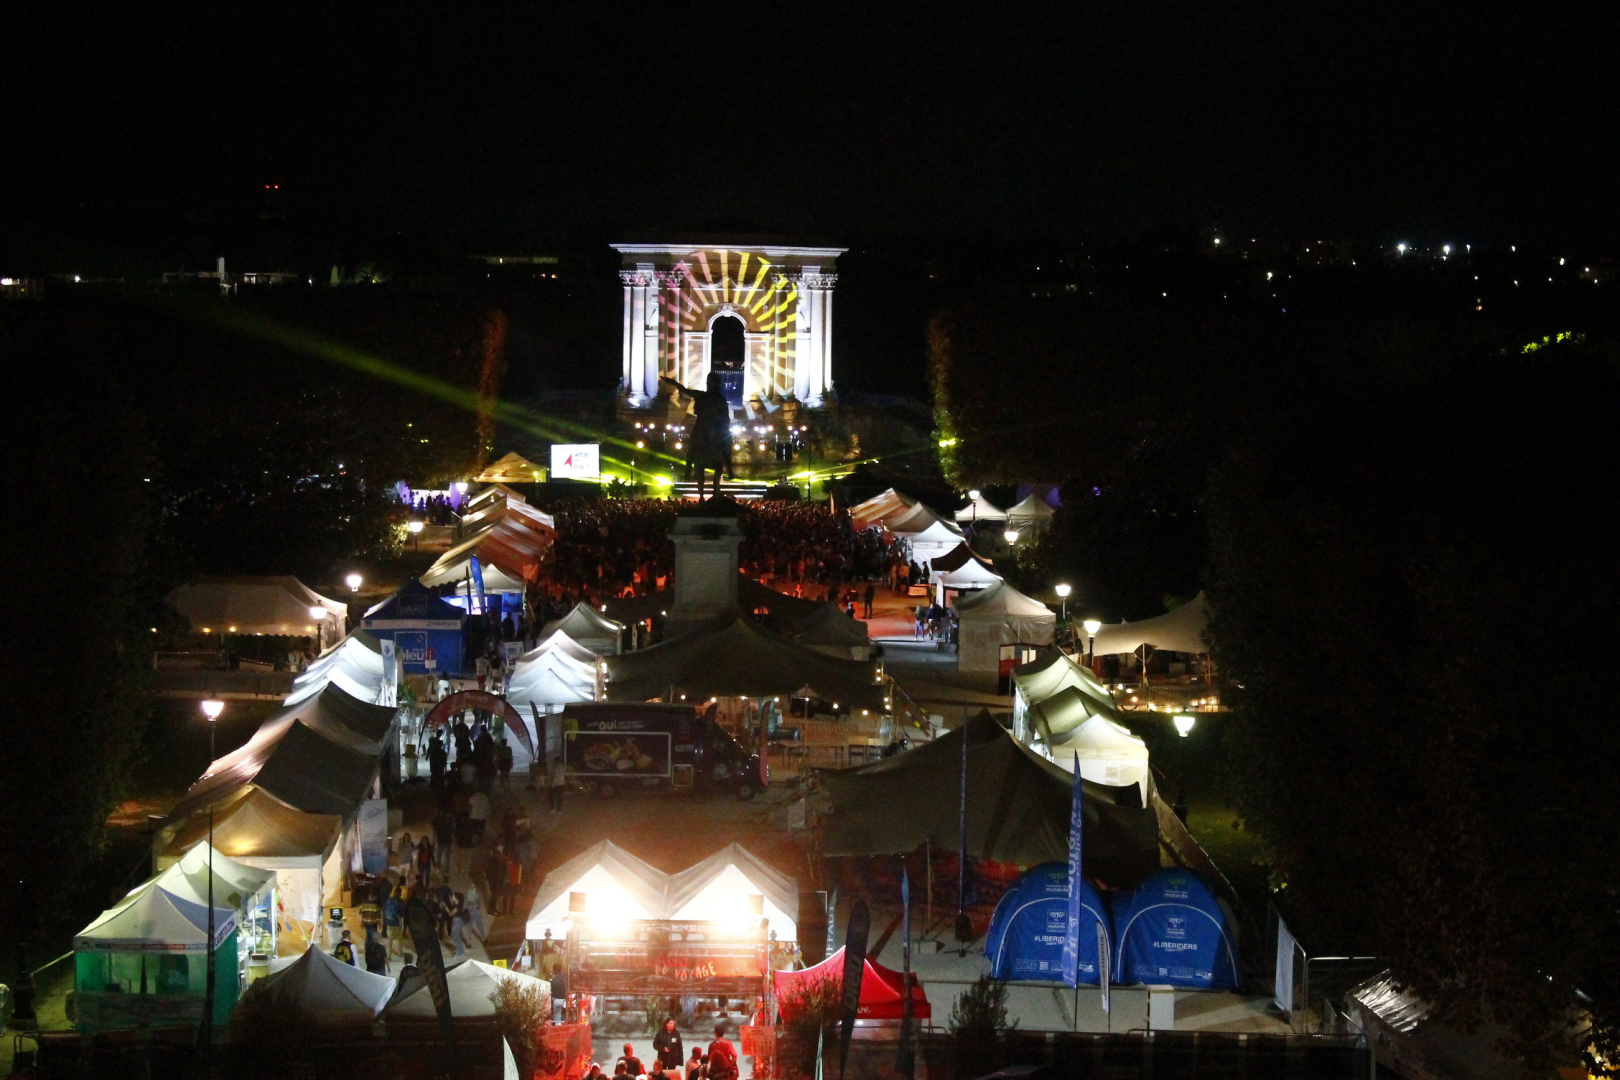 Vue aérienne de la Place du Peyrou en nocturne avec les installations du festival what a trip